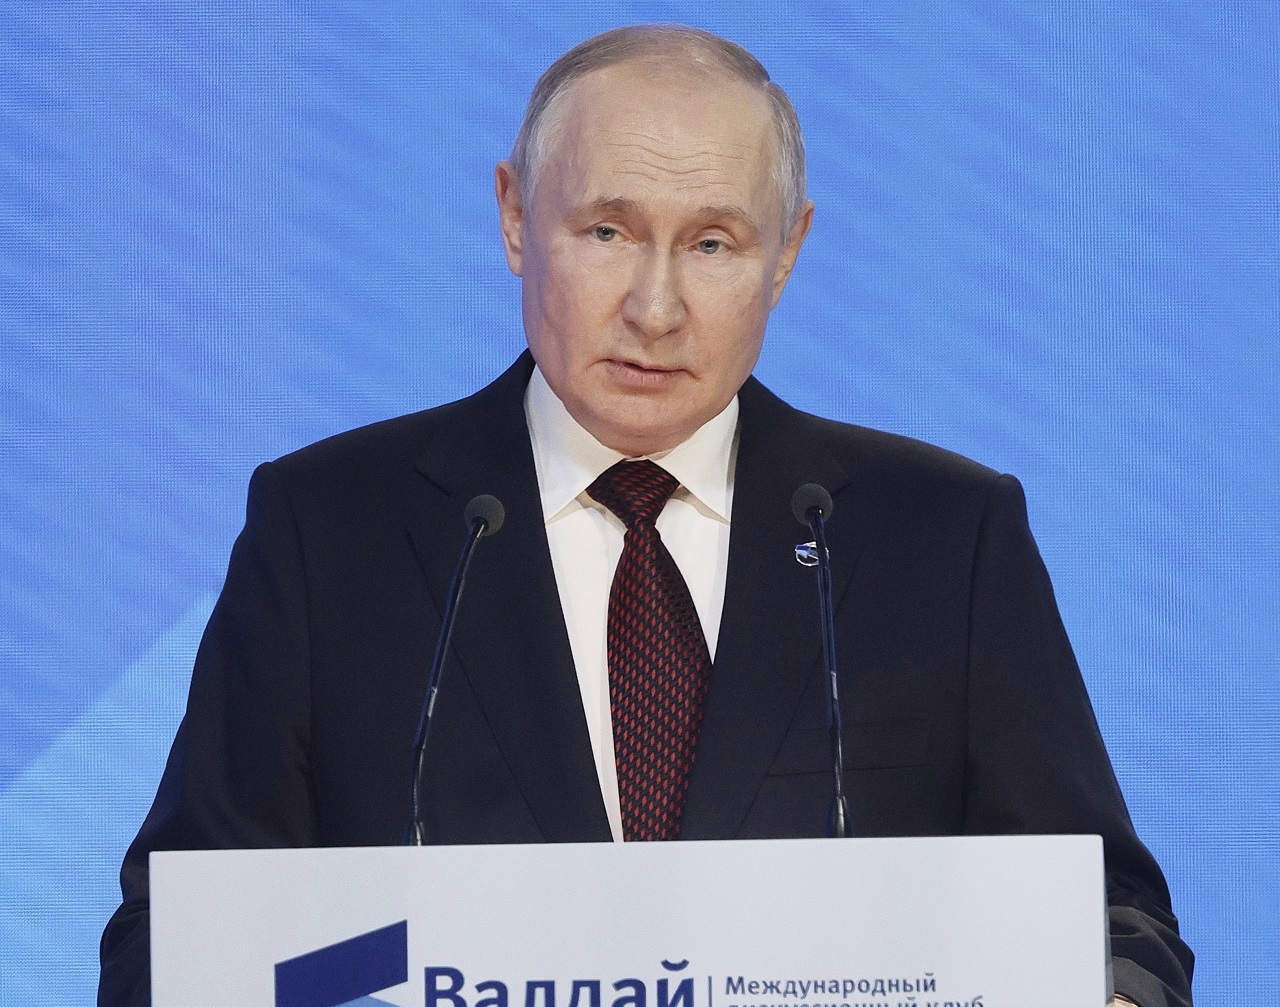 Ako si vysvetliť Putinov zmierlivý tón na Valdajskom fóre